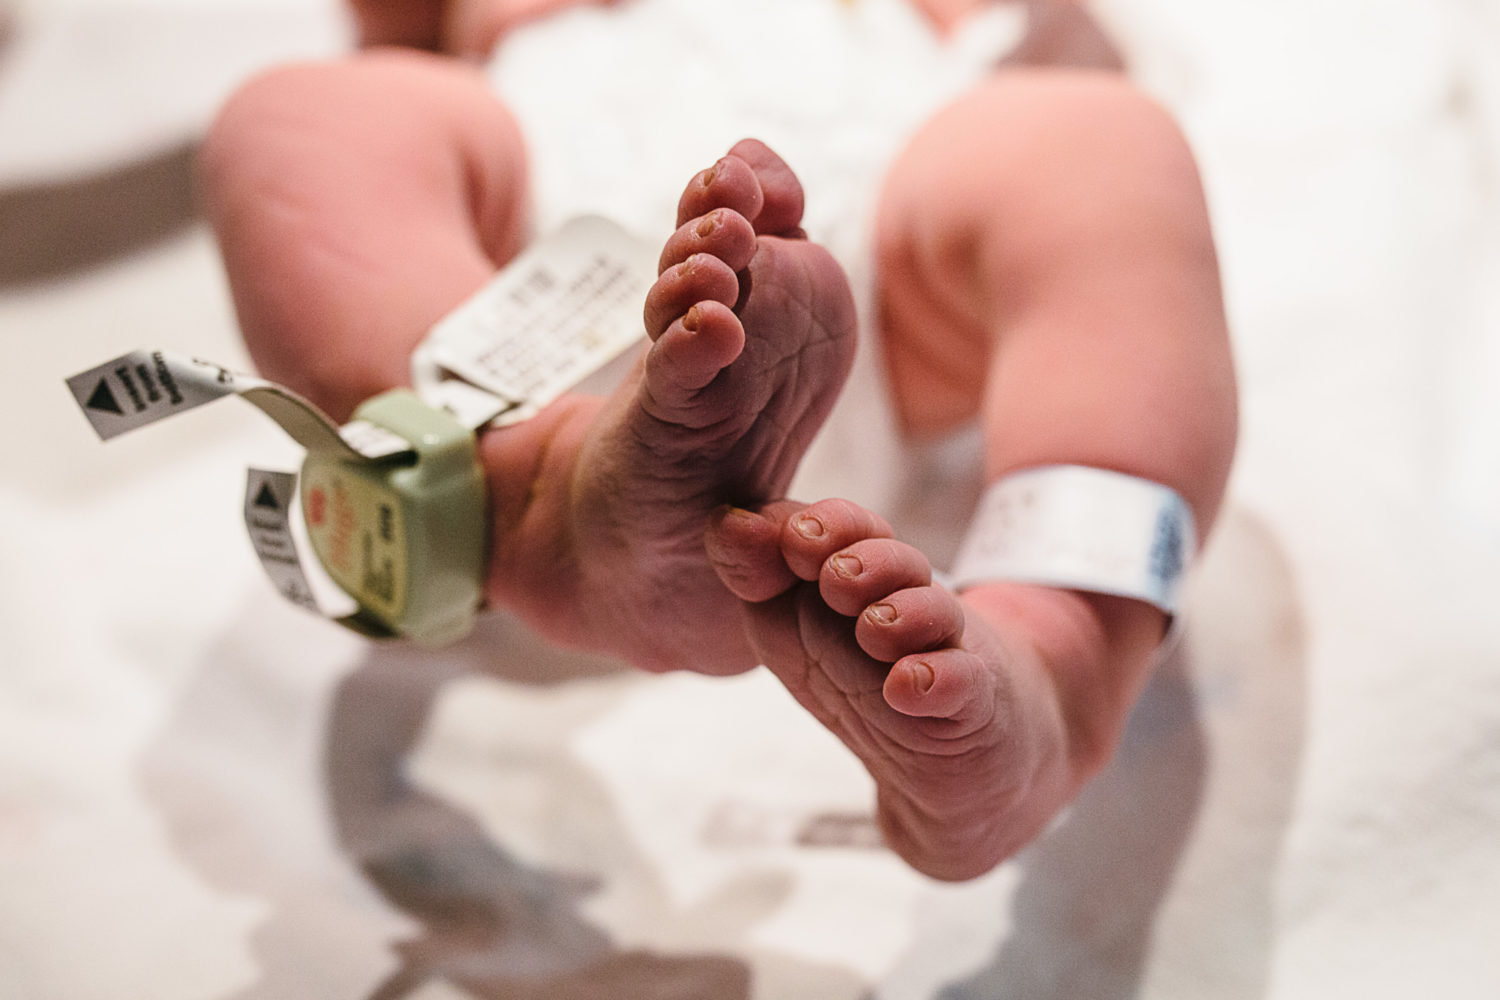 newborn baby feet in hospital